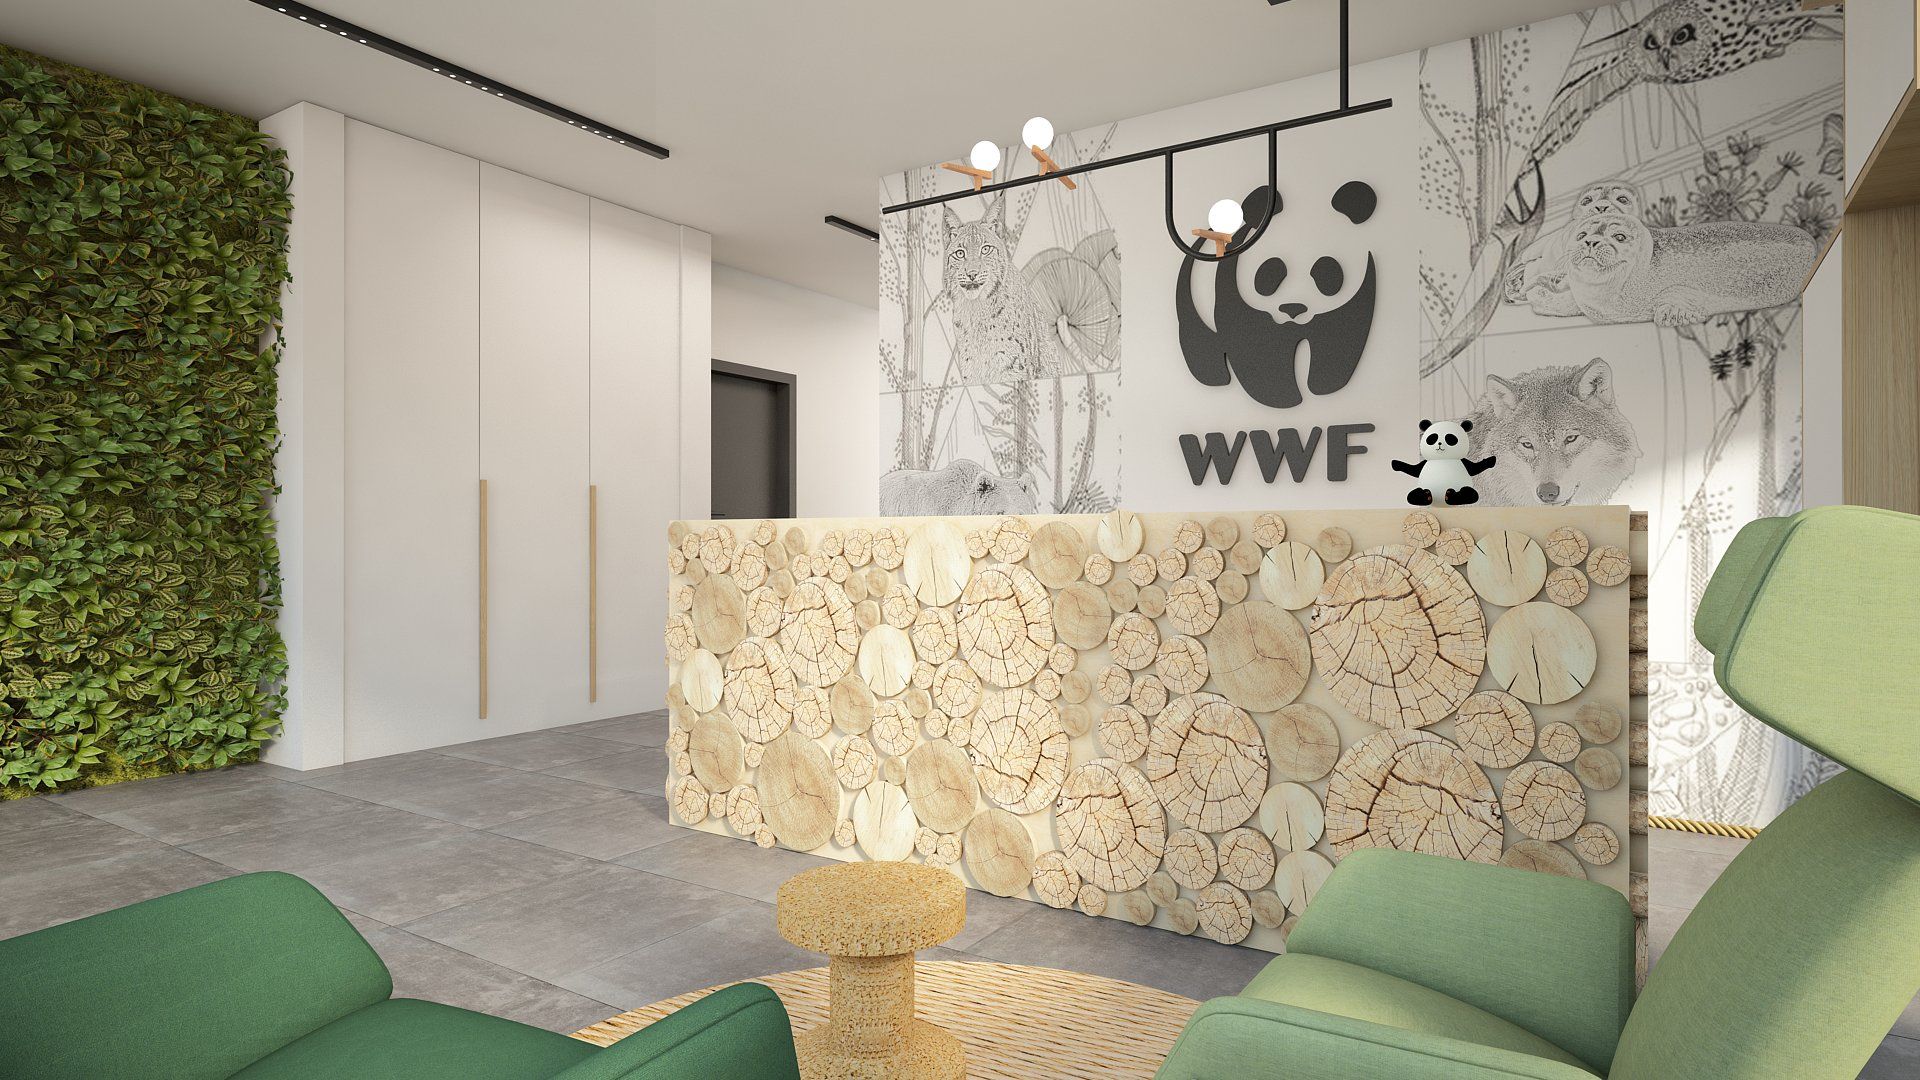 powierzchnie biurowe w Warszawie – projektowanie biur dla WWF